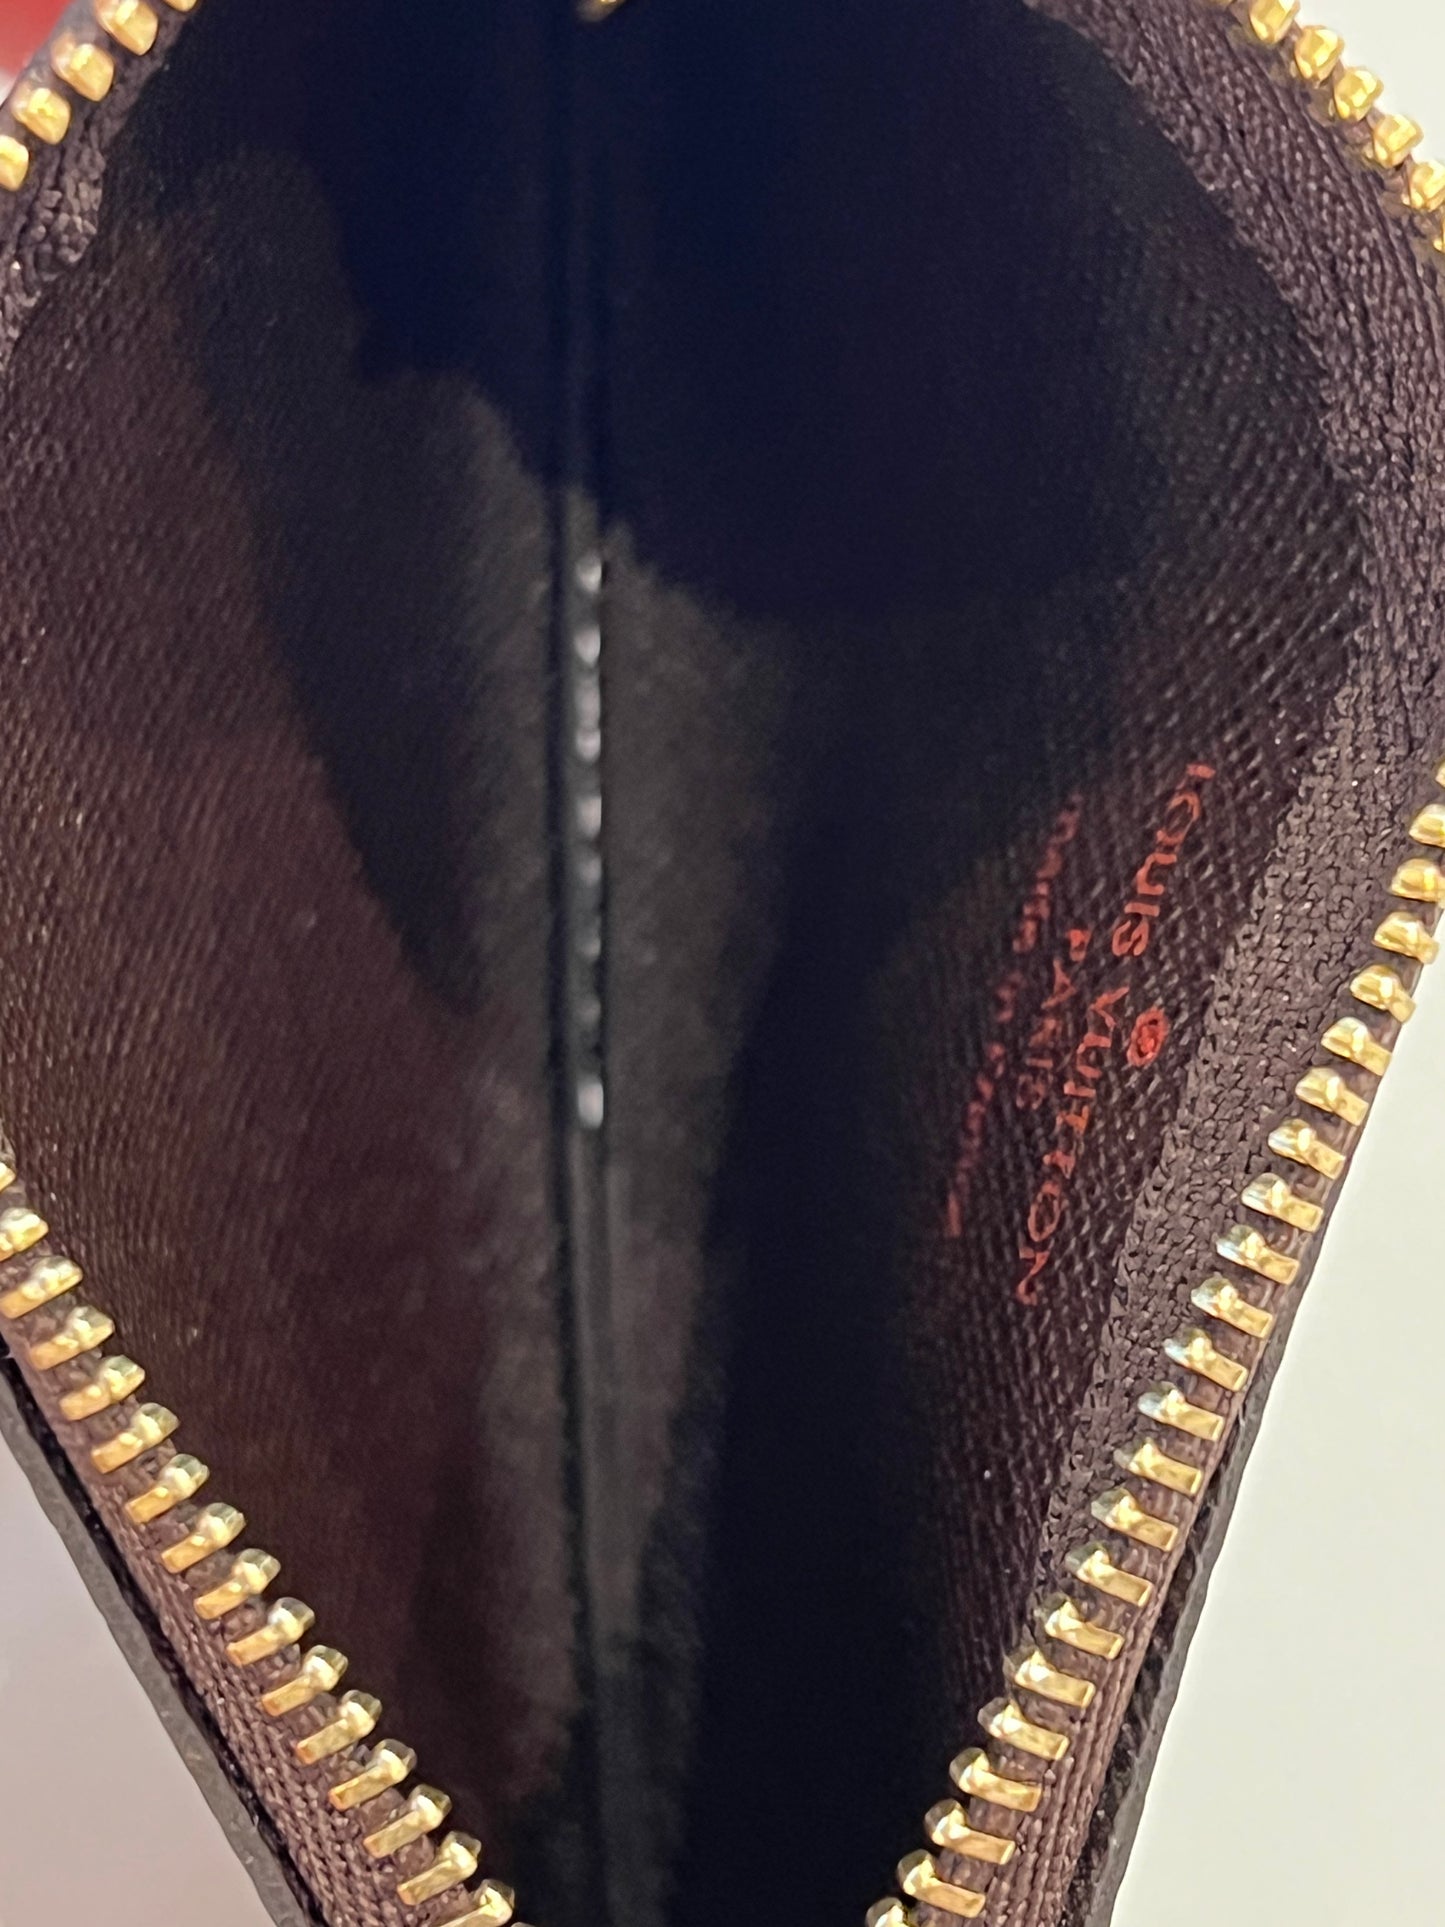 Louis Vuitton pochette con catena